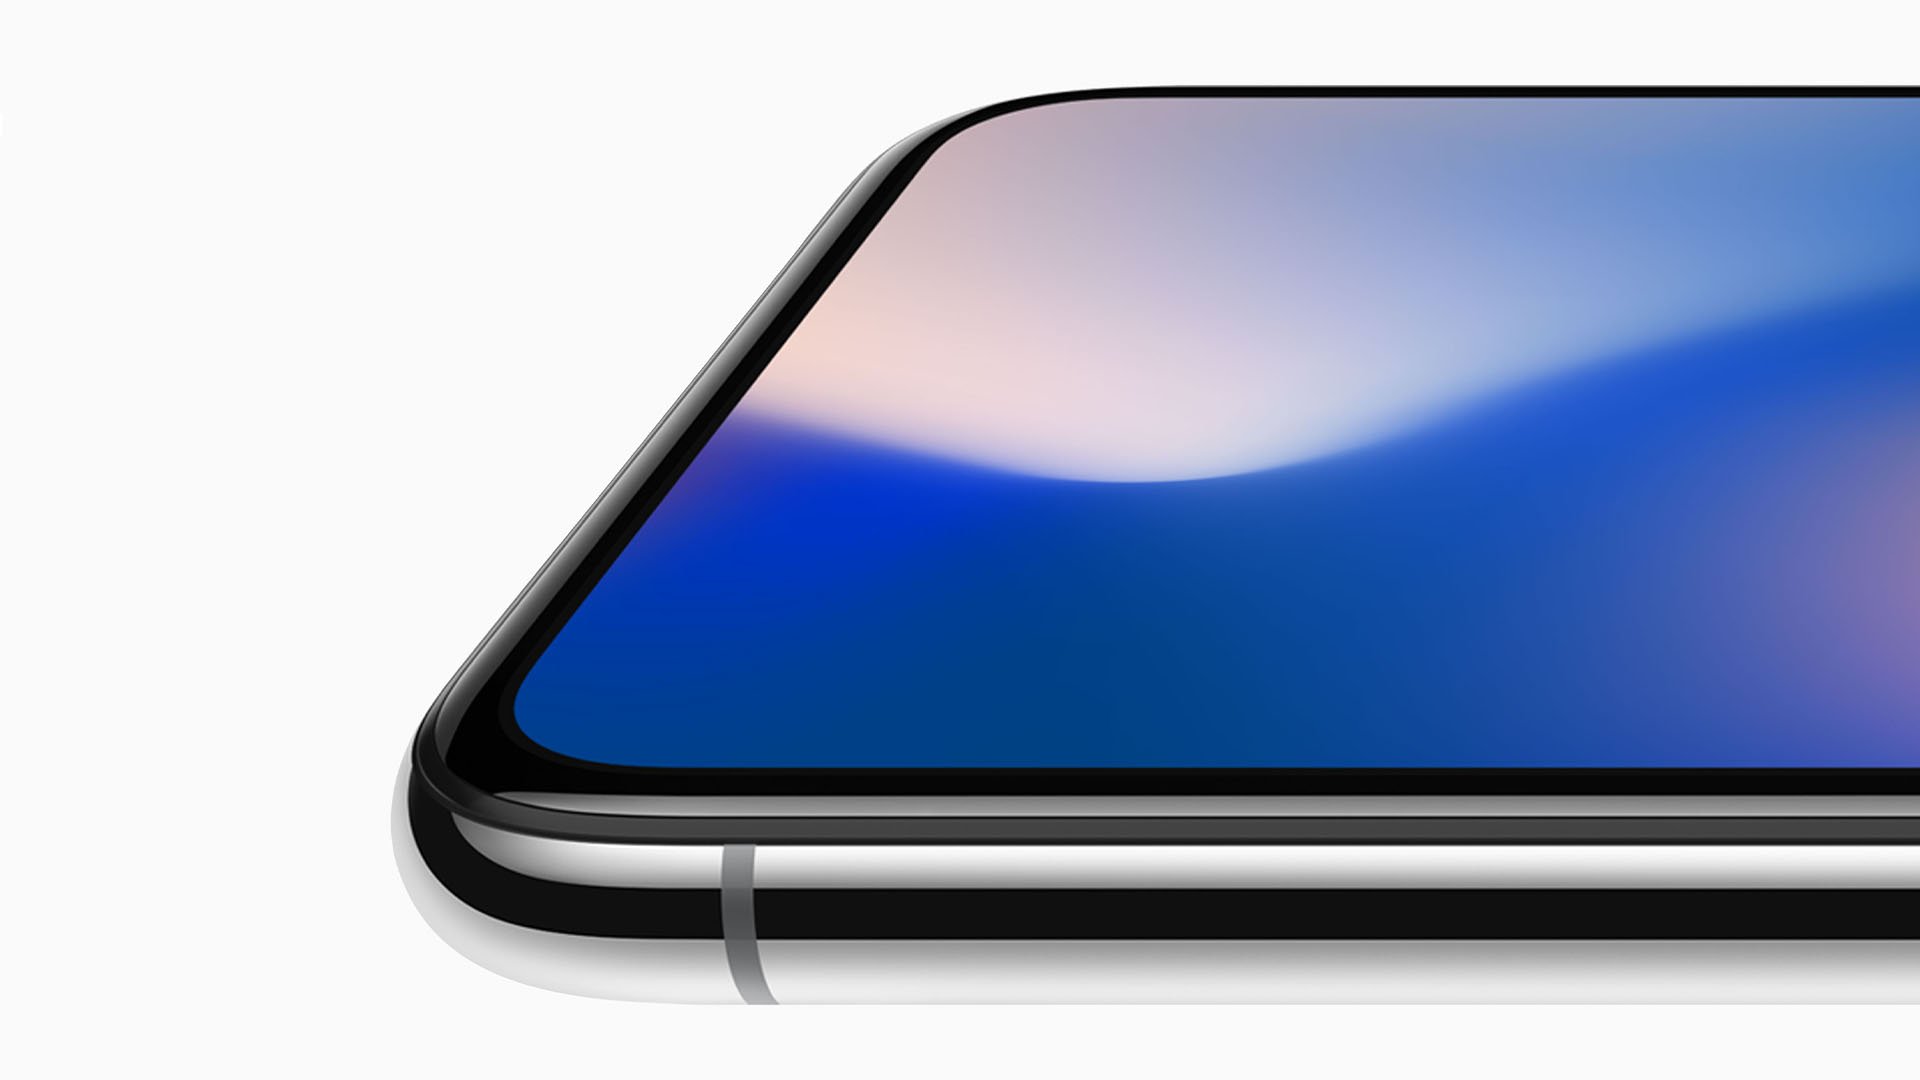 Apple hợp tác với LG Innotek để tạo ra iPhone "không đục lỗ", màn hình tràn hết mặt trước